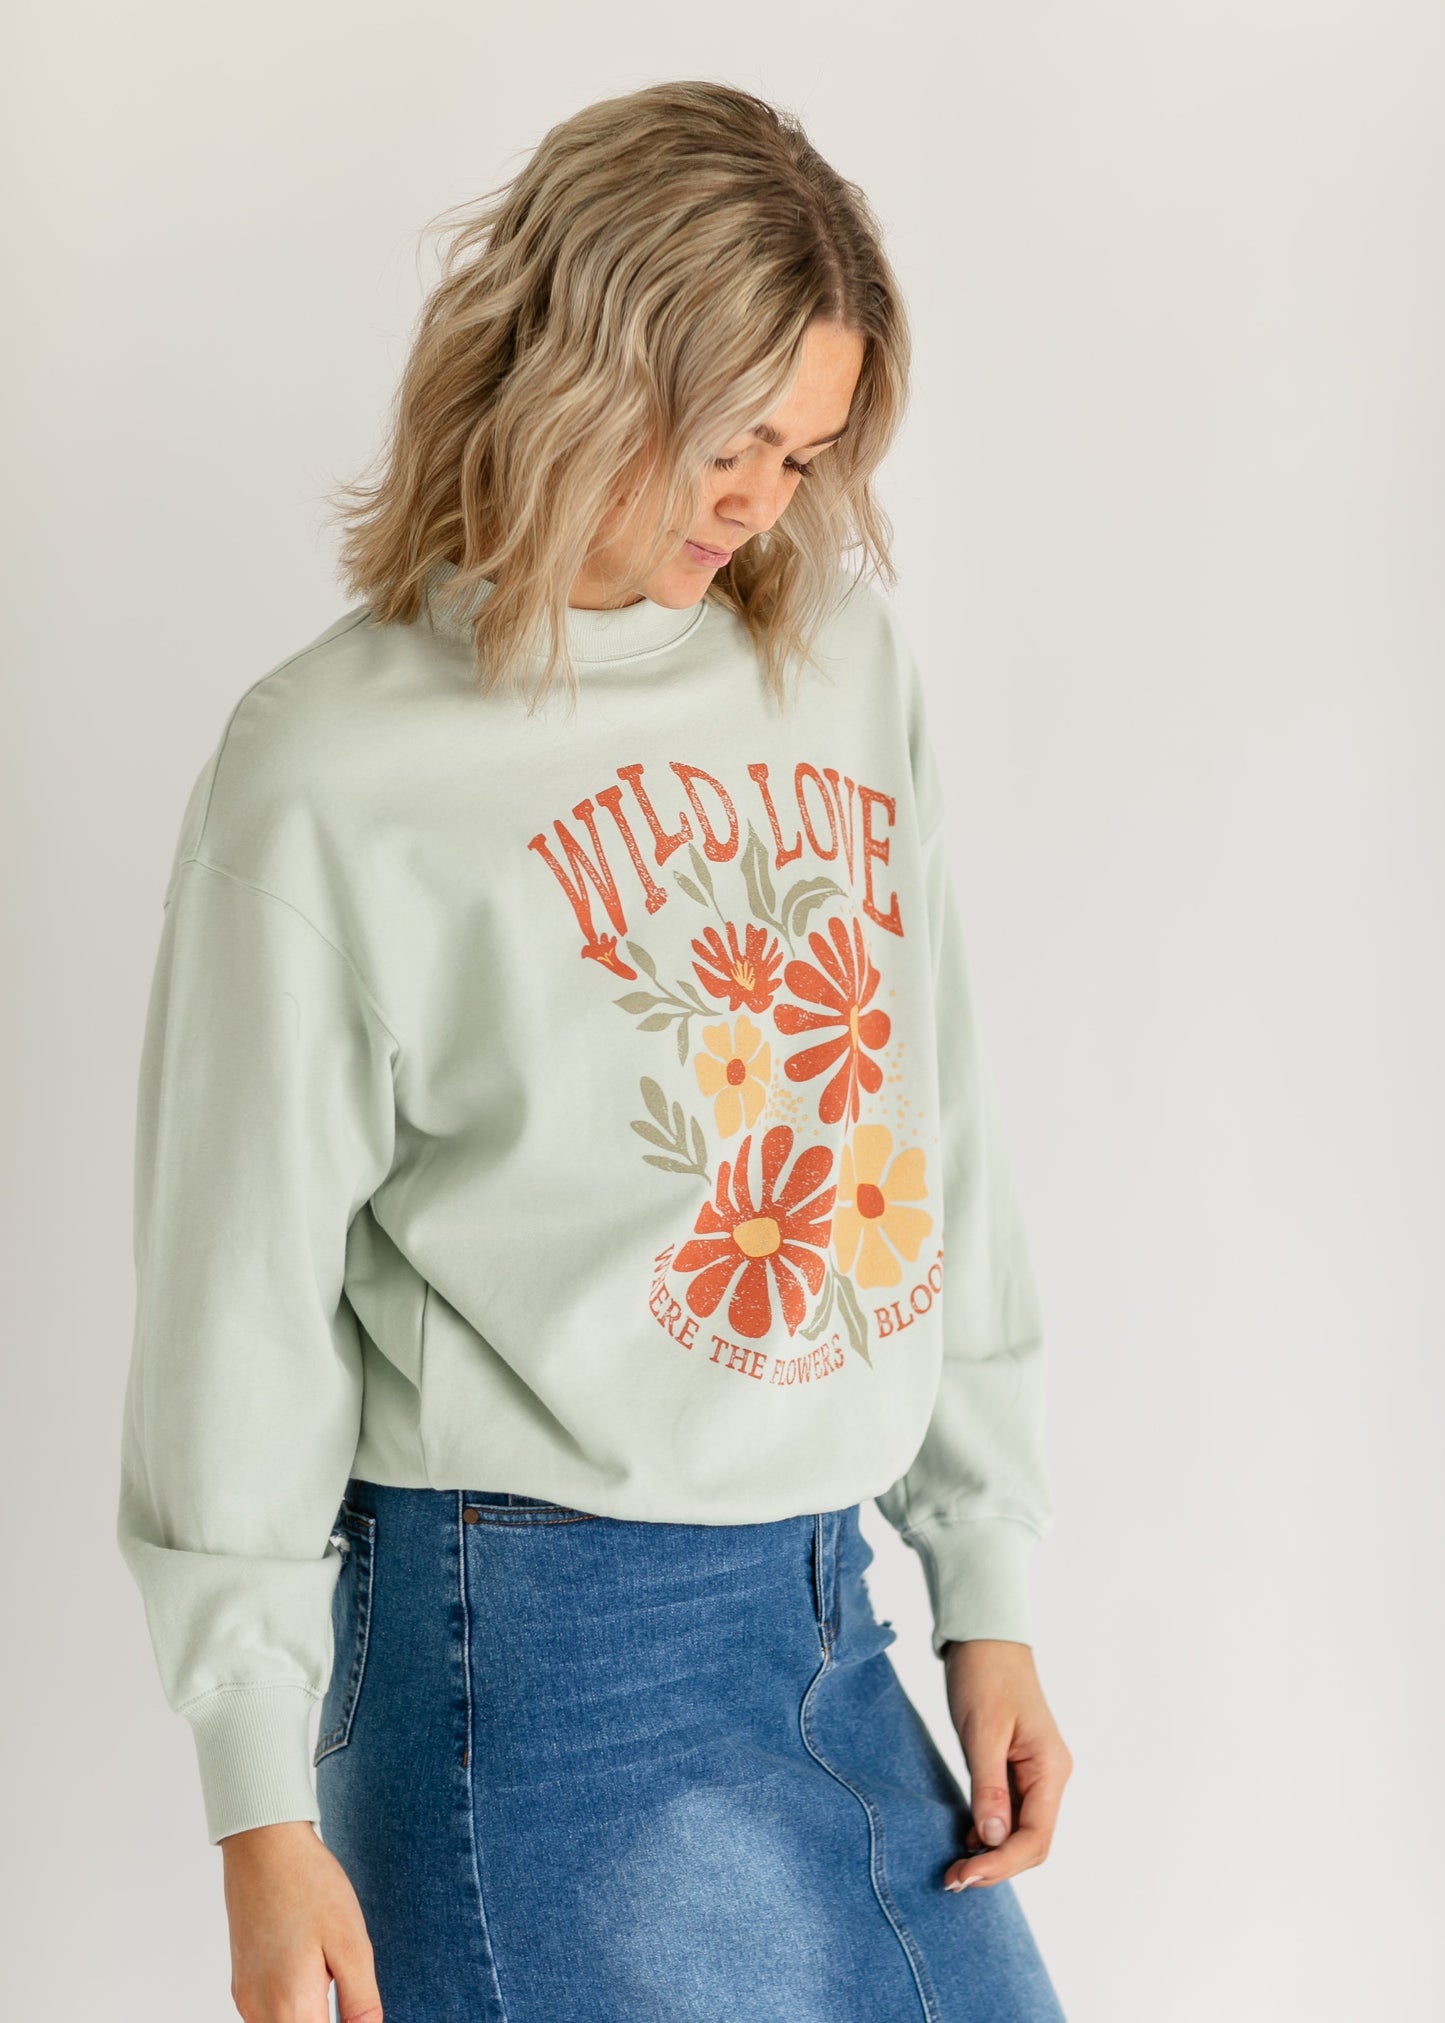 Inherit Wild Love Floral Graphic Crewneck Sweatshirt FF Tops